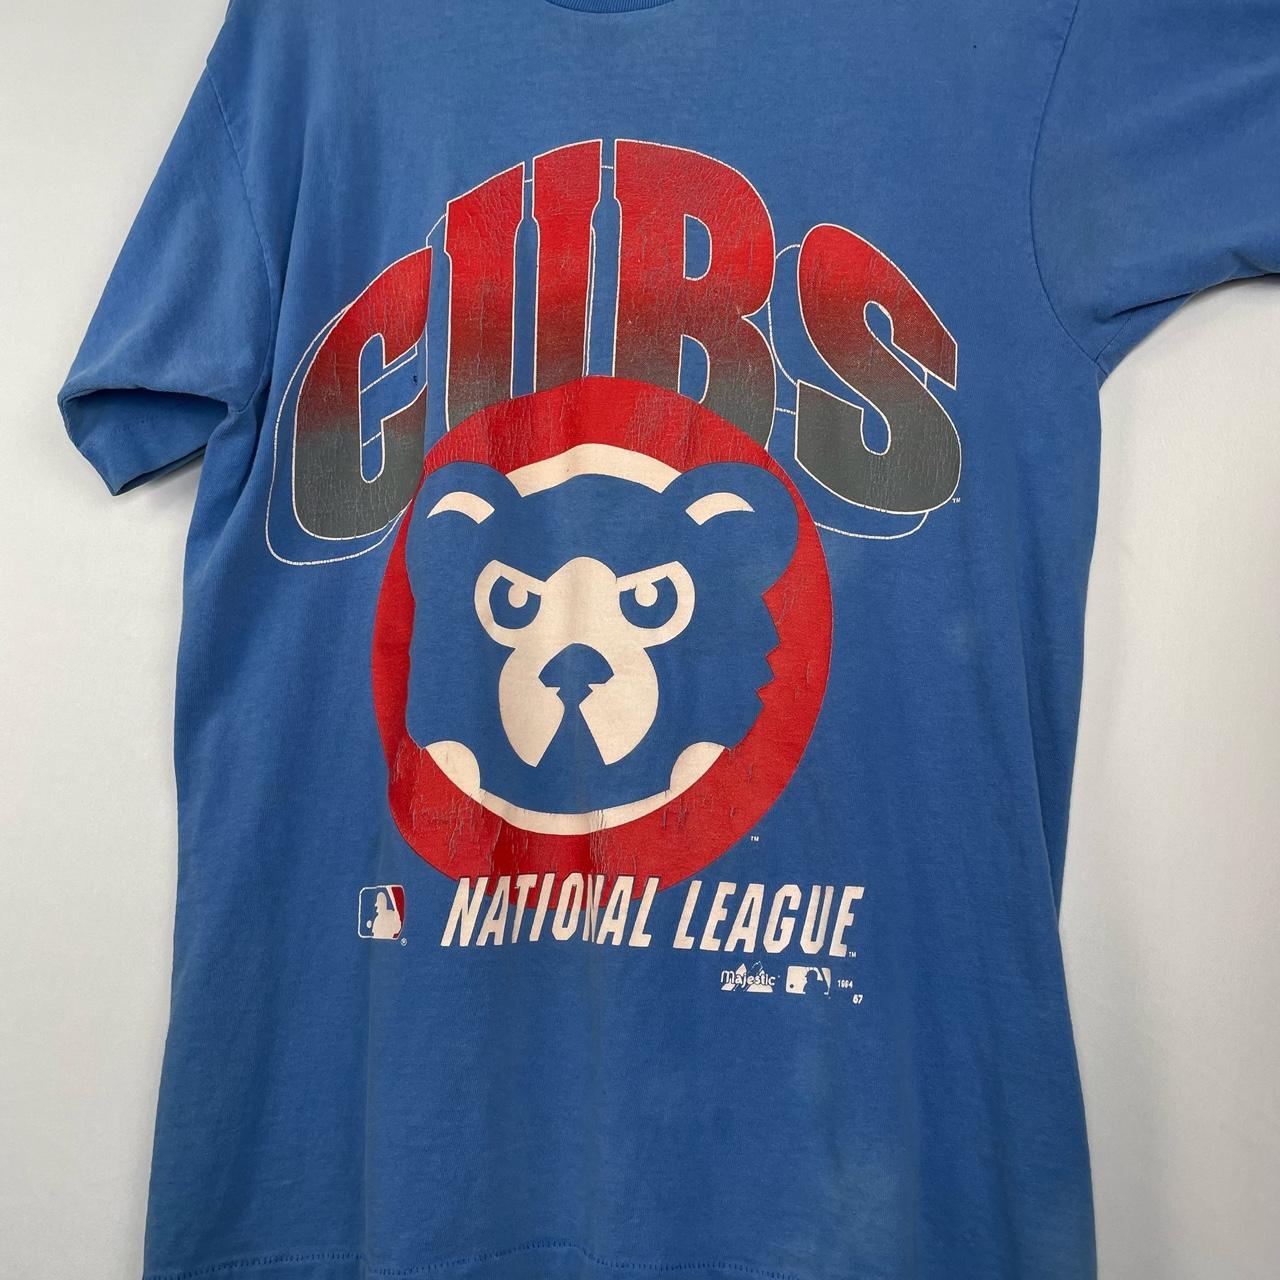 Vintage 1994 Chicago Cubs All Over Print T-shirt - Depop